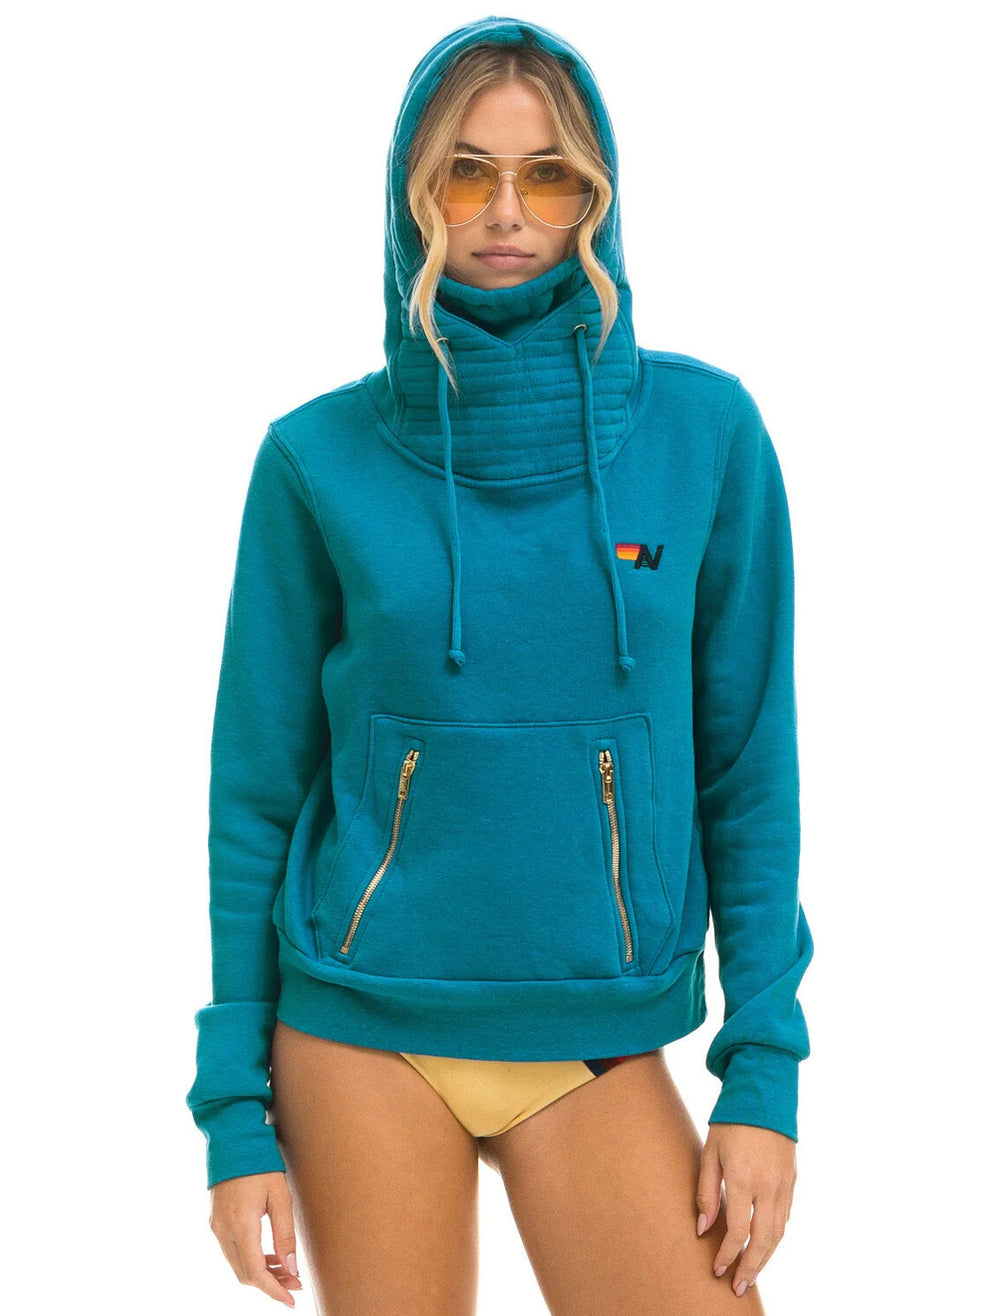 Model wearing Aviator Nation's ninja hoodie in teal.